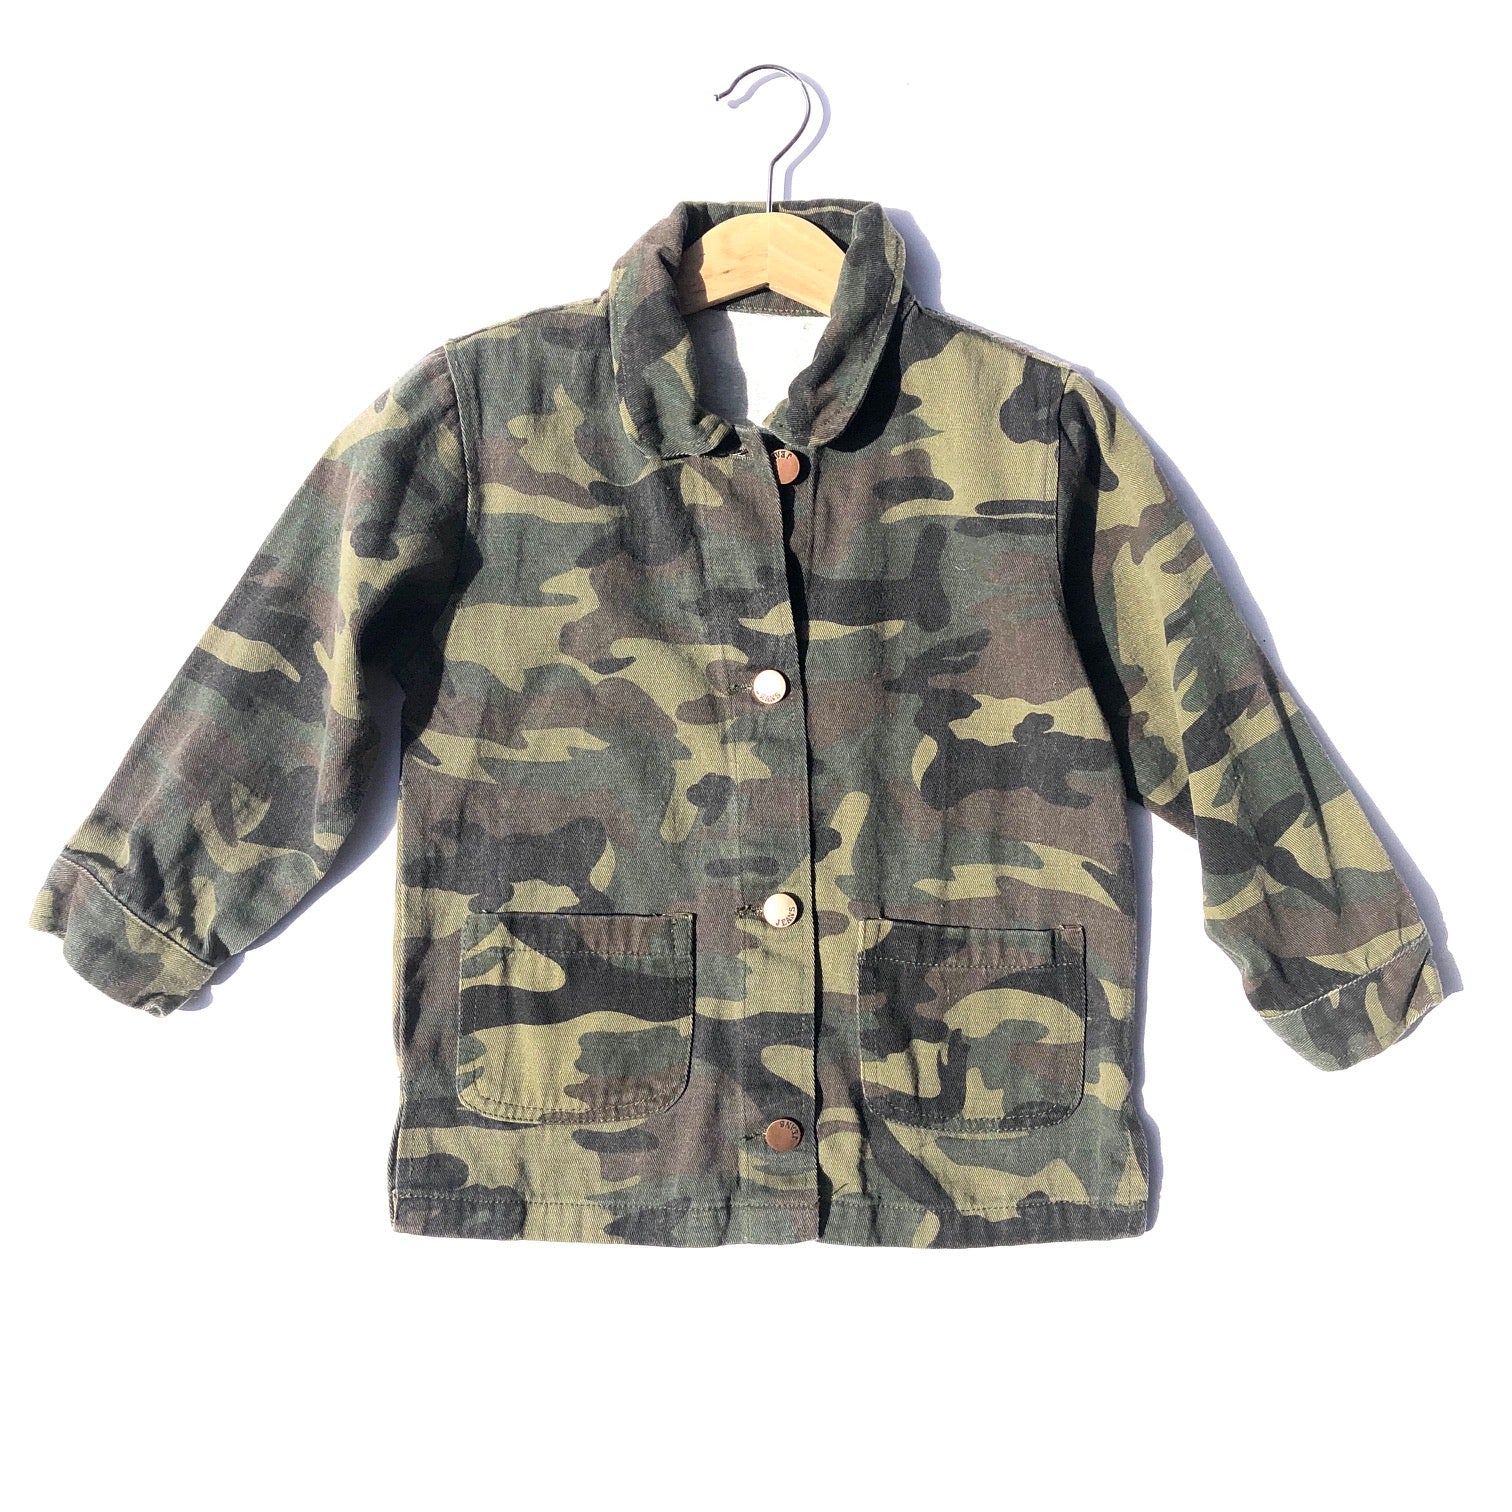 Vintage Camouflage Jacket size 4